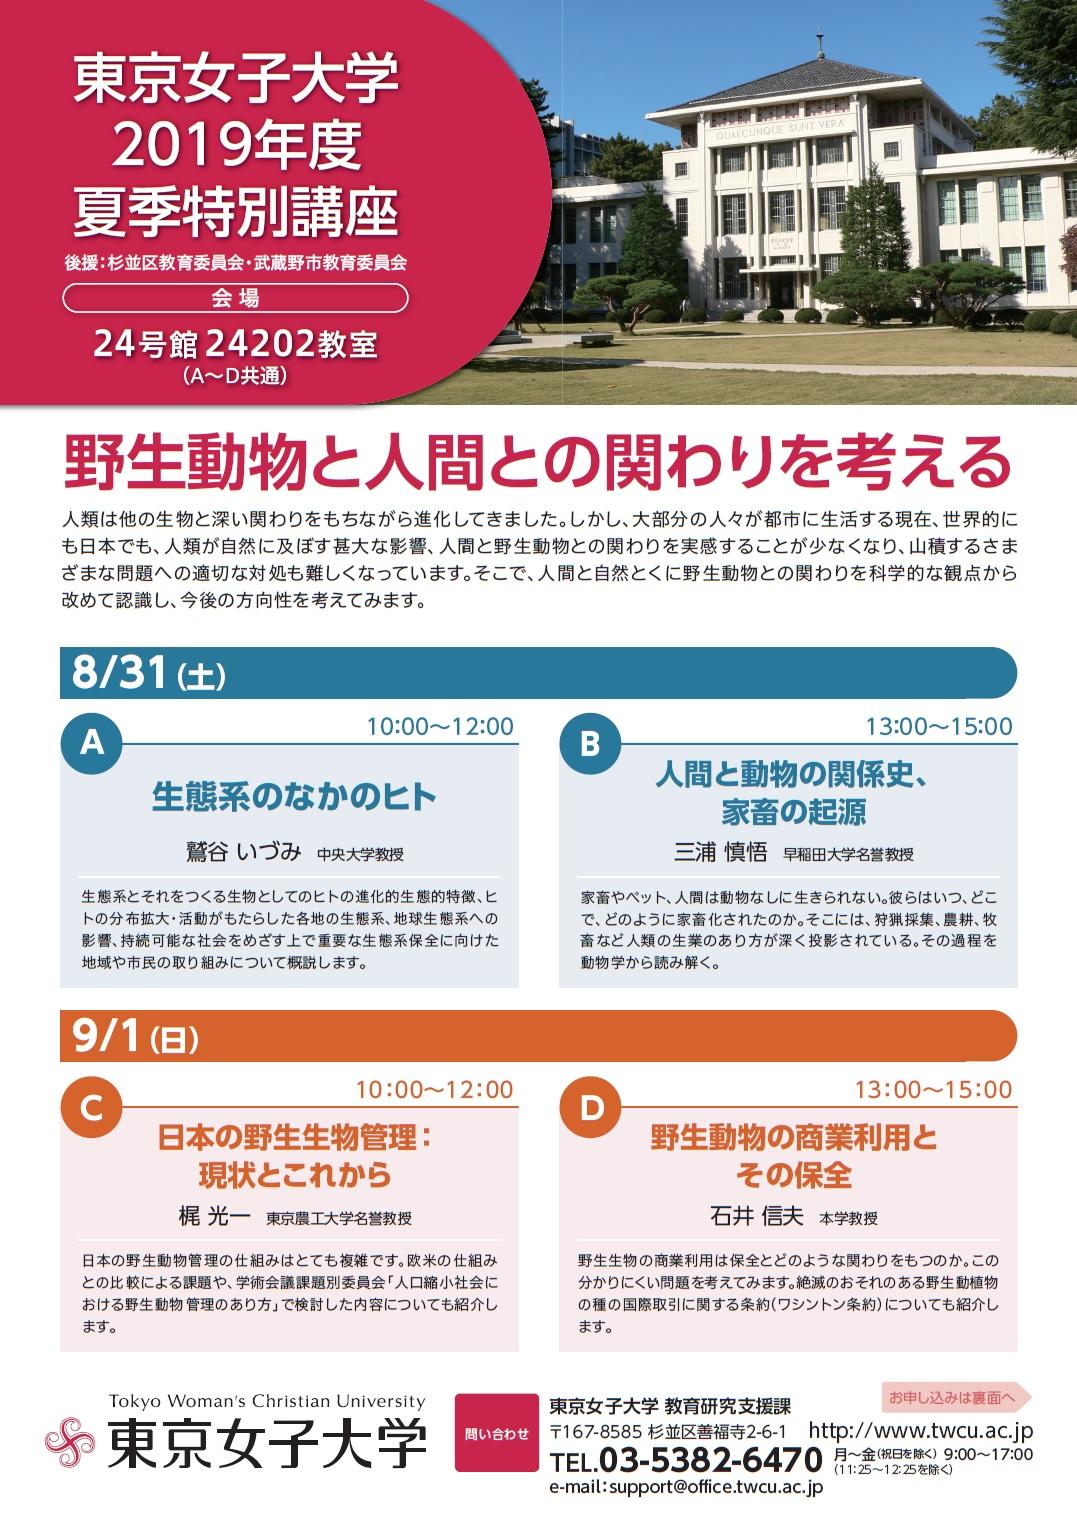 東京女子大学が8月31日、9月1日に夏季特別講座を開催 -- テーマは「野生動物と人間との関わりを考える」